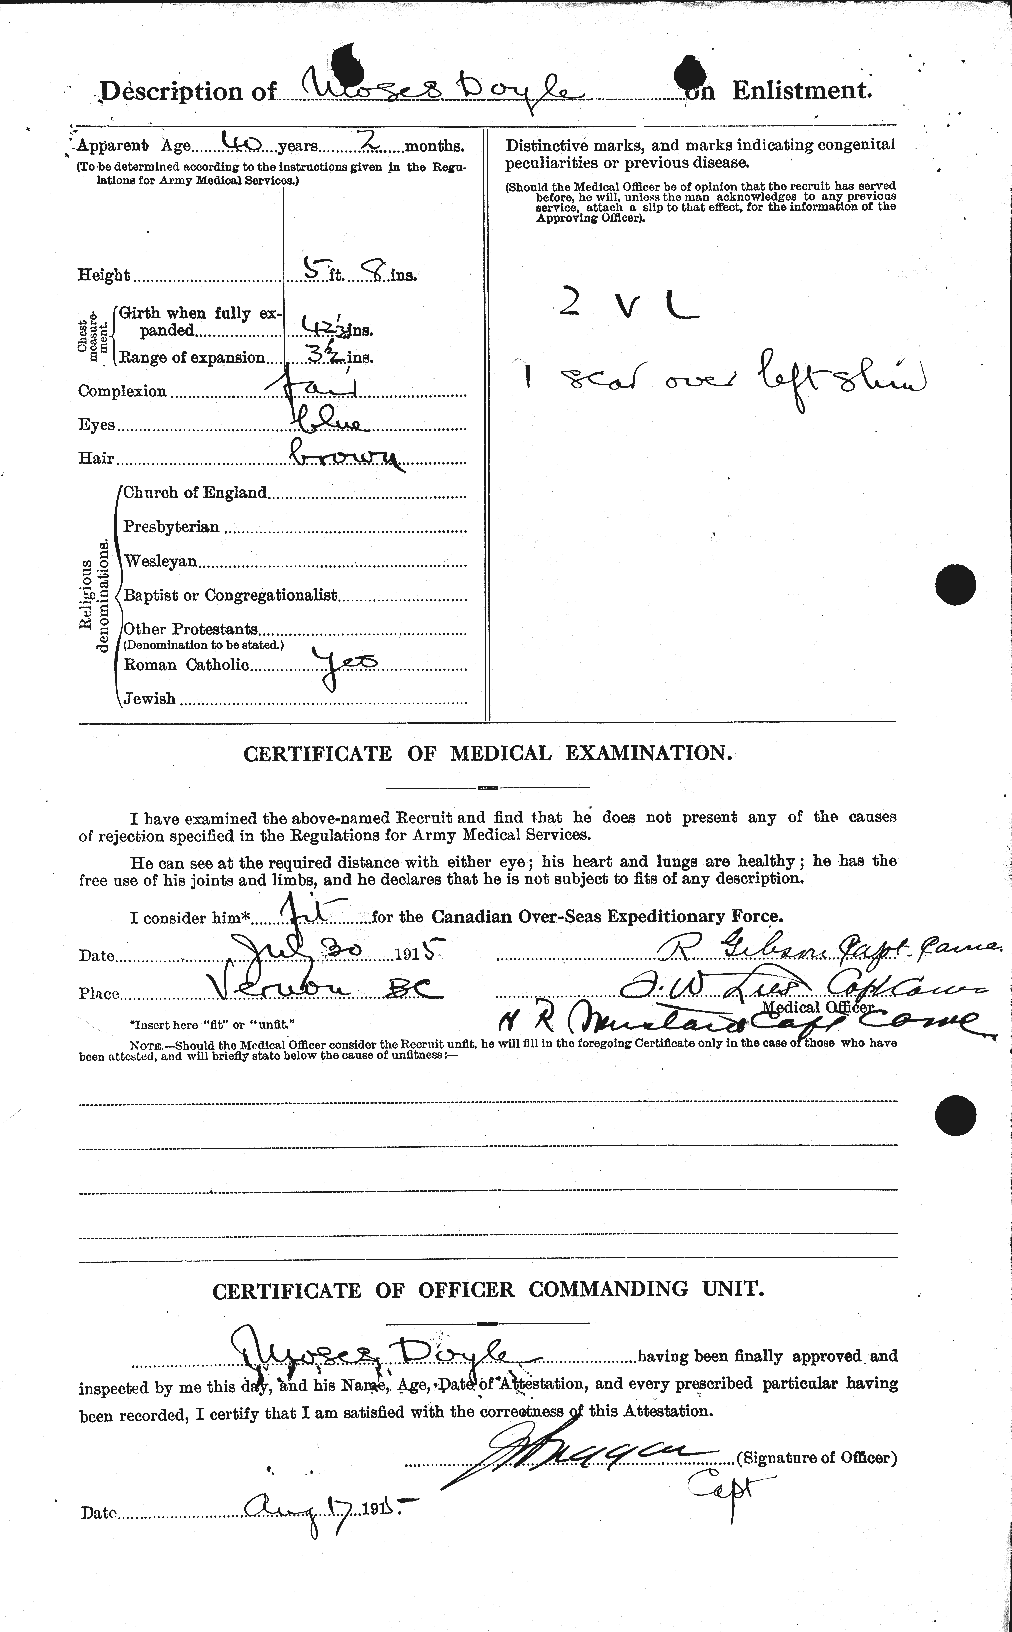 Dossiers du Personnel de la Première Guerre mondiale - CEC 298658b